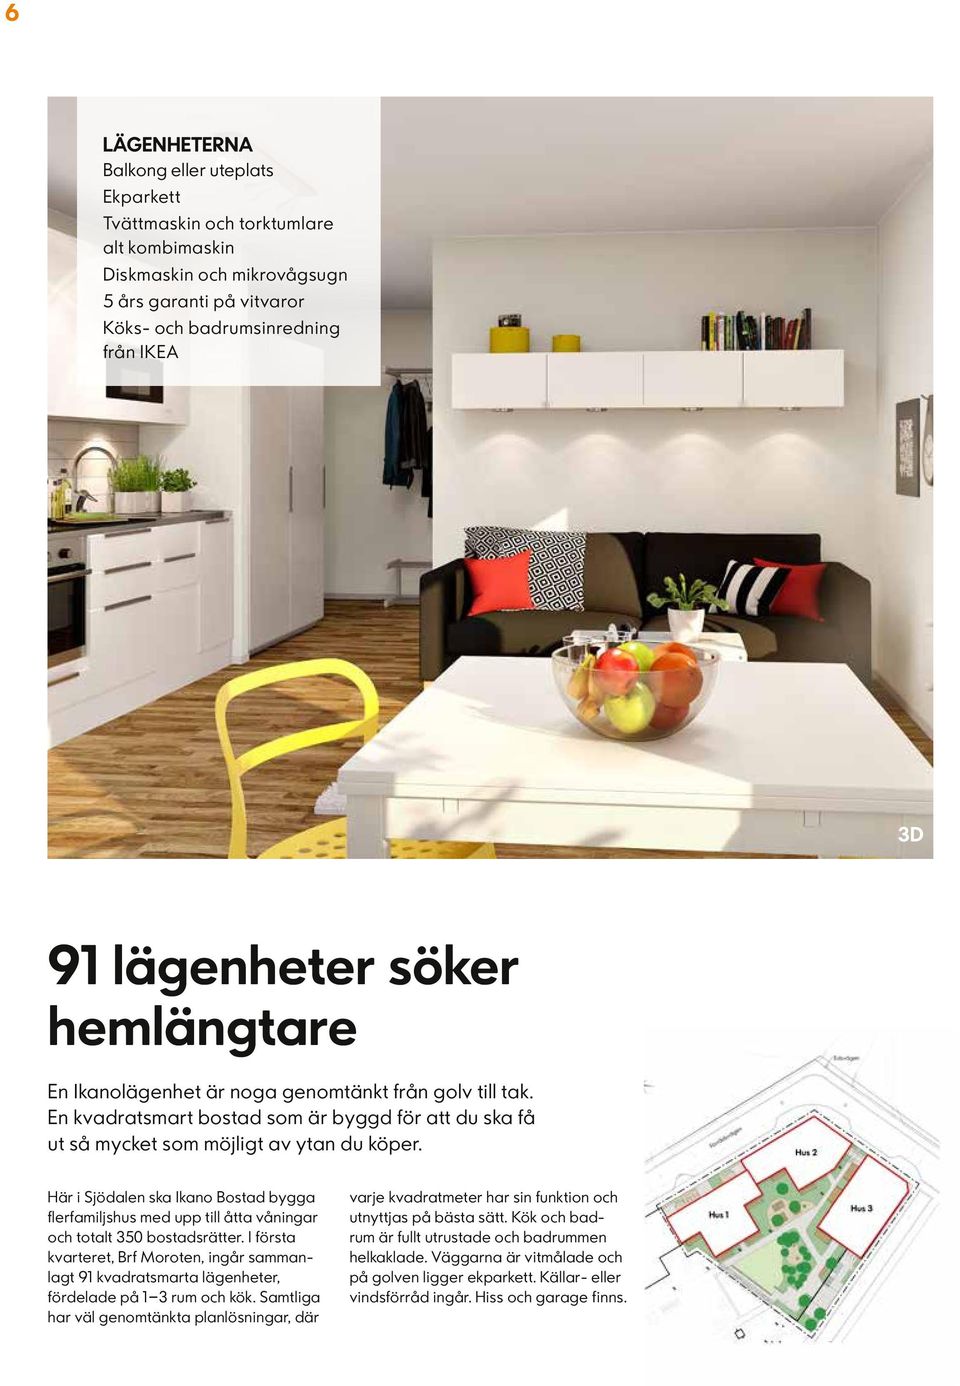 Här i Sjödalen ska Ikano Bostad bygga flerfamiljshus med upp till åtta våningar och totalt 350 bostadsrätter.